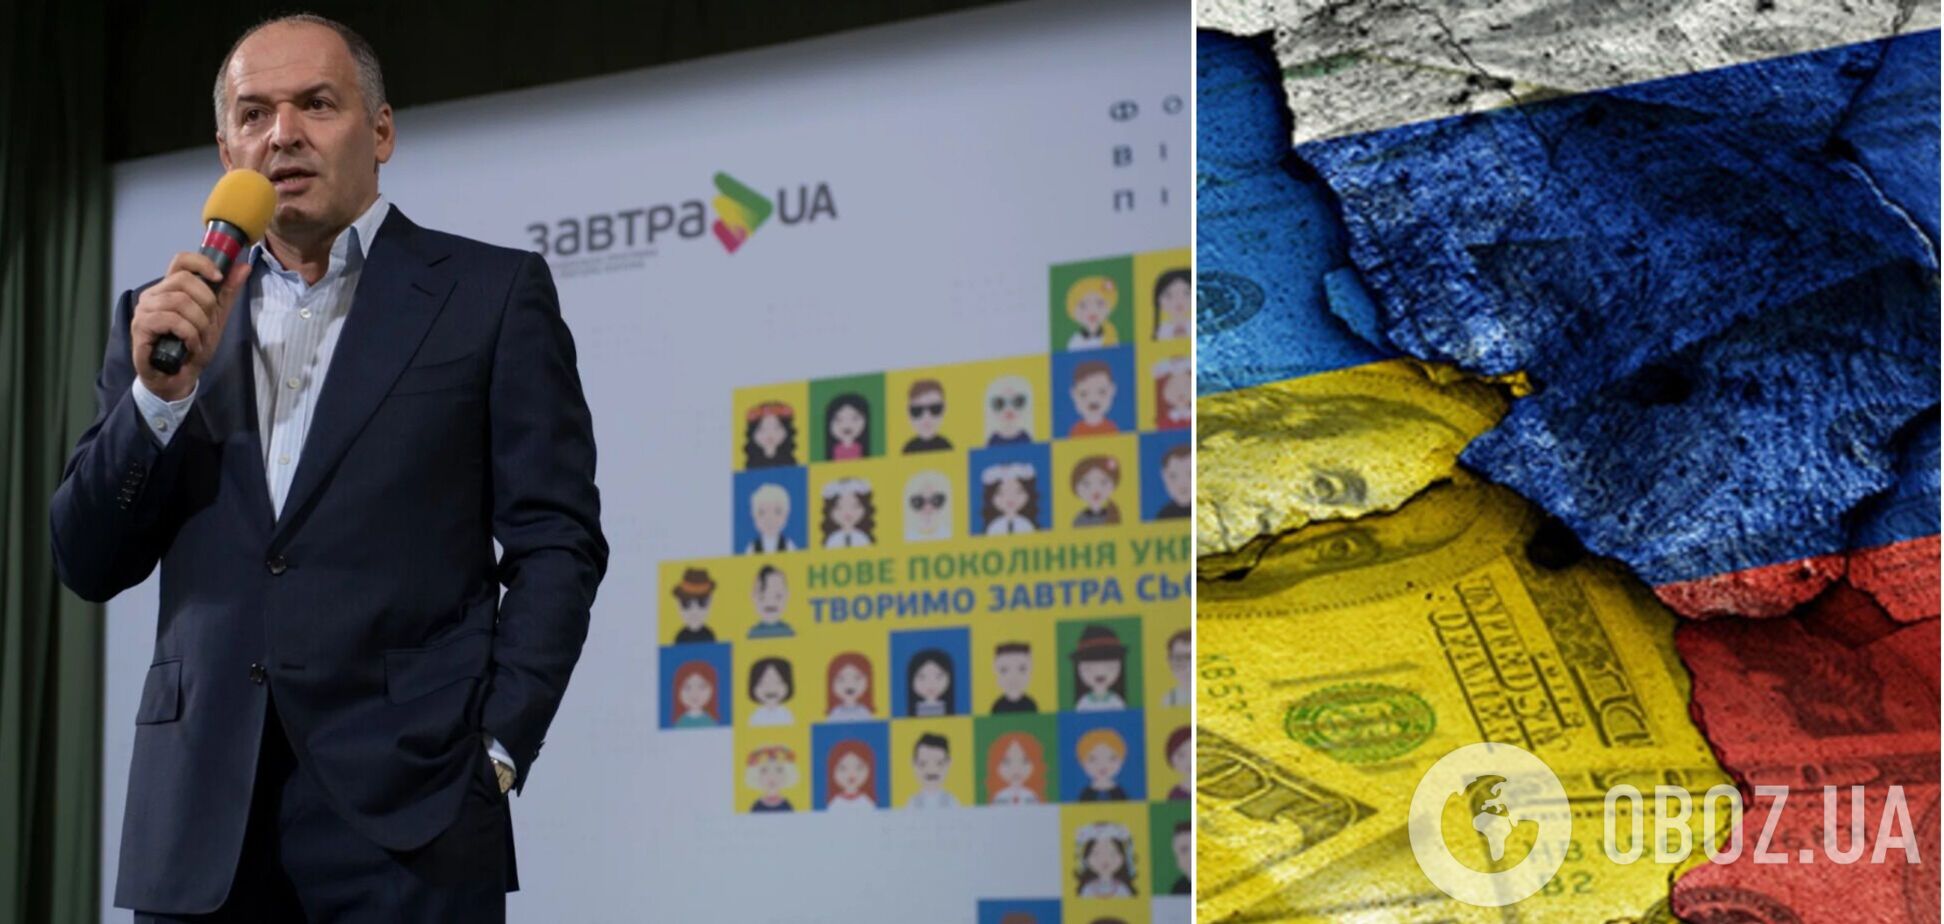 'Интерпайп' Пинчука продолжает работать в России, несмотря на войну – СМИ